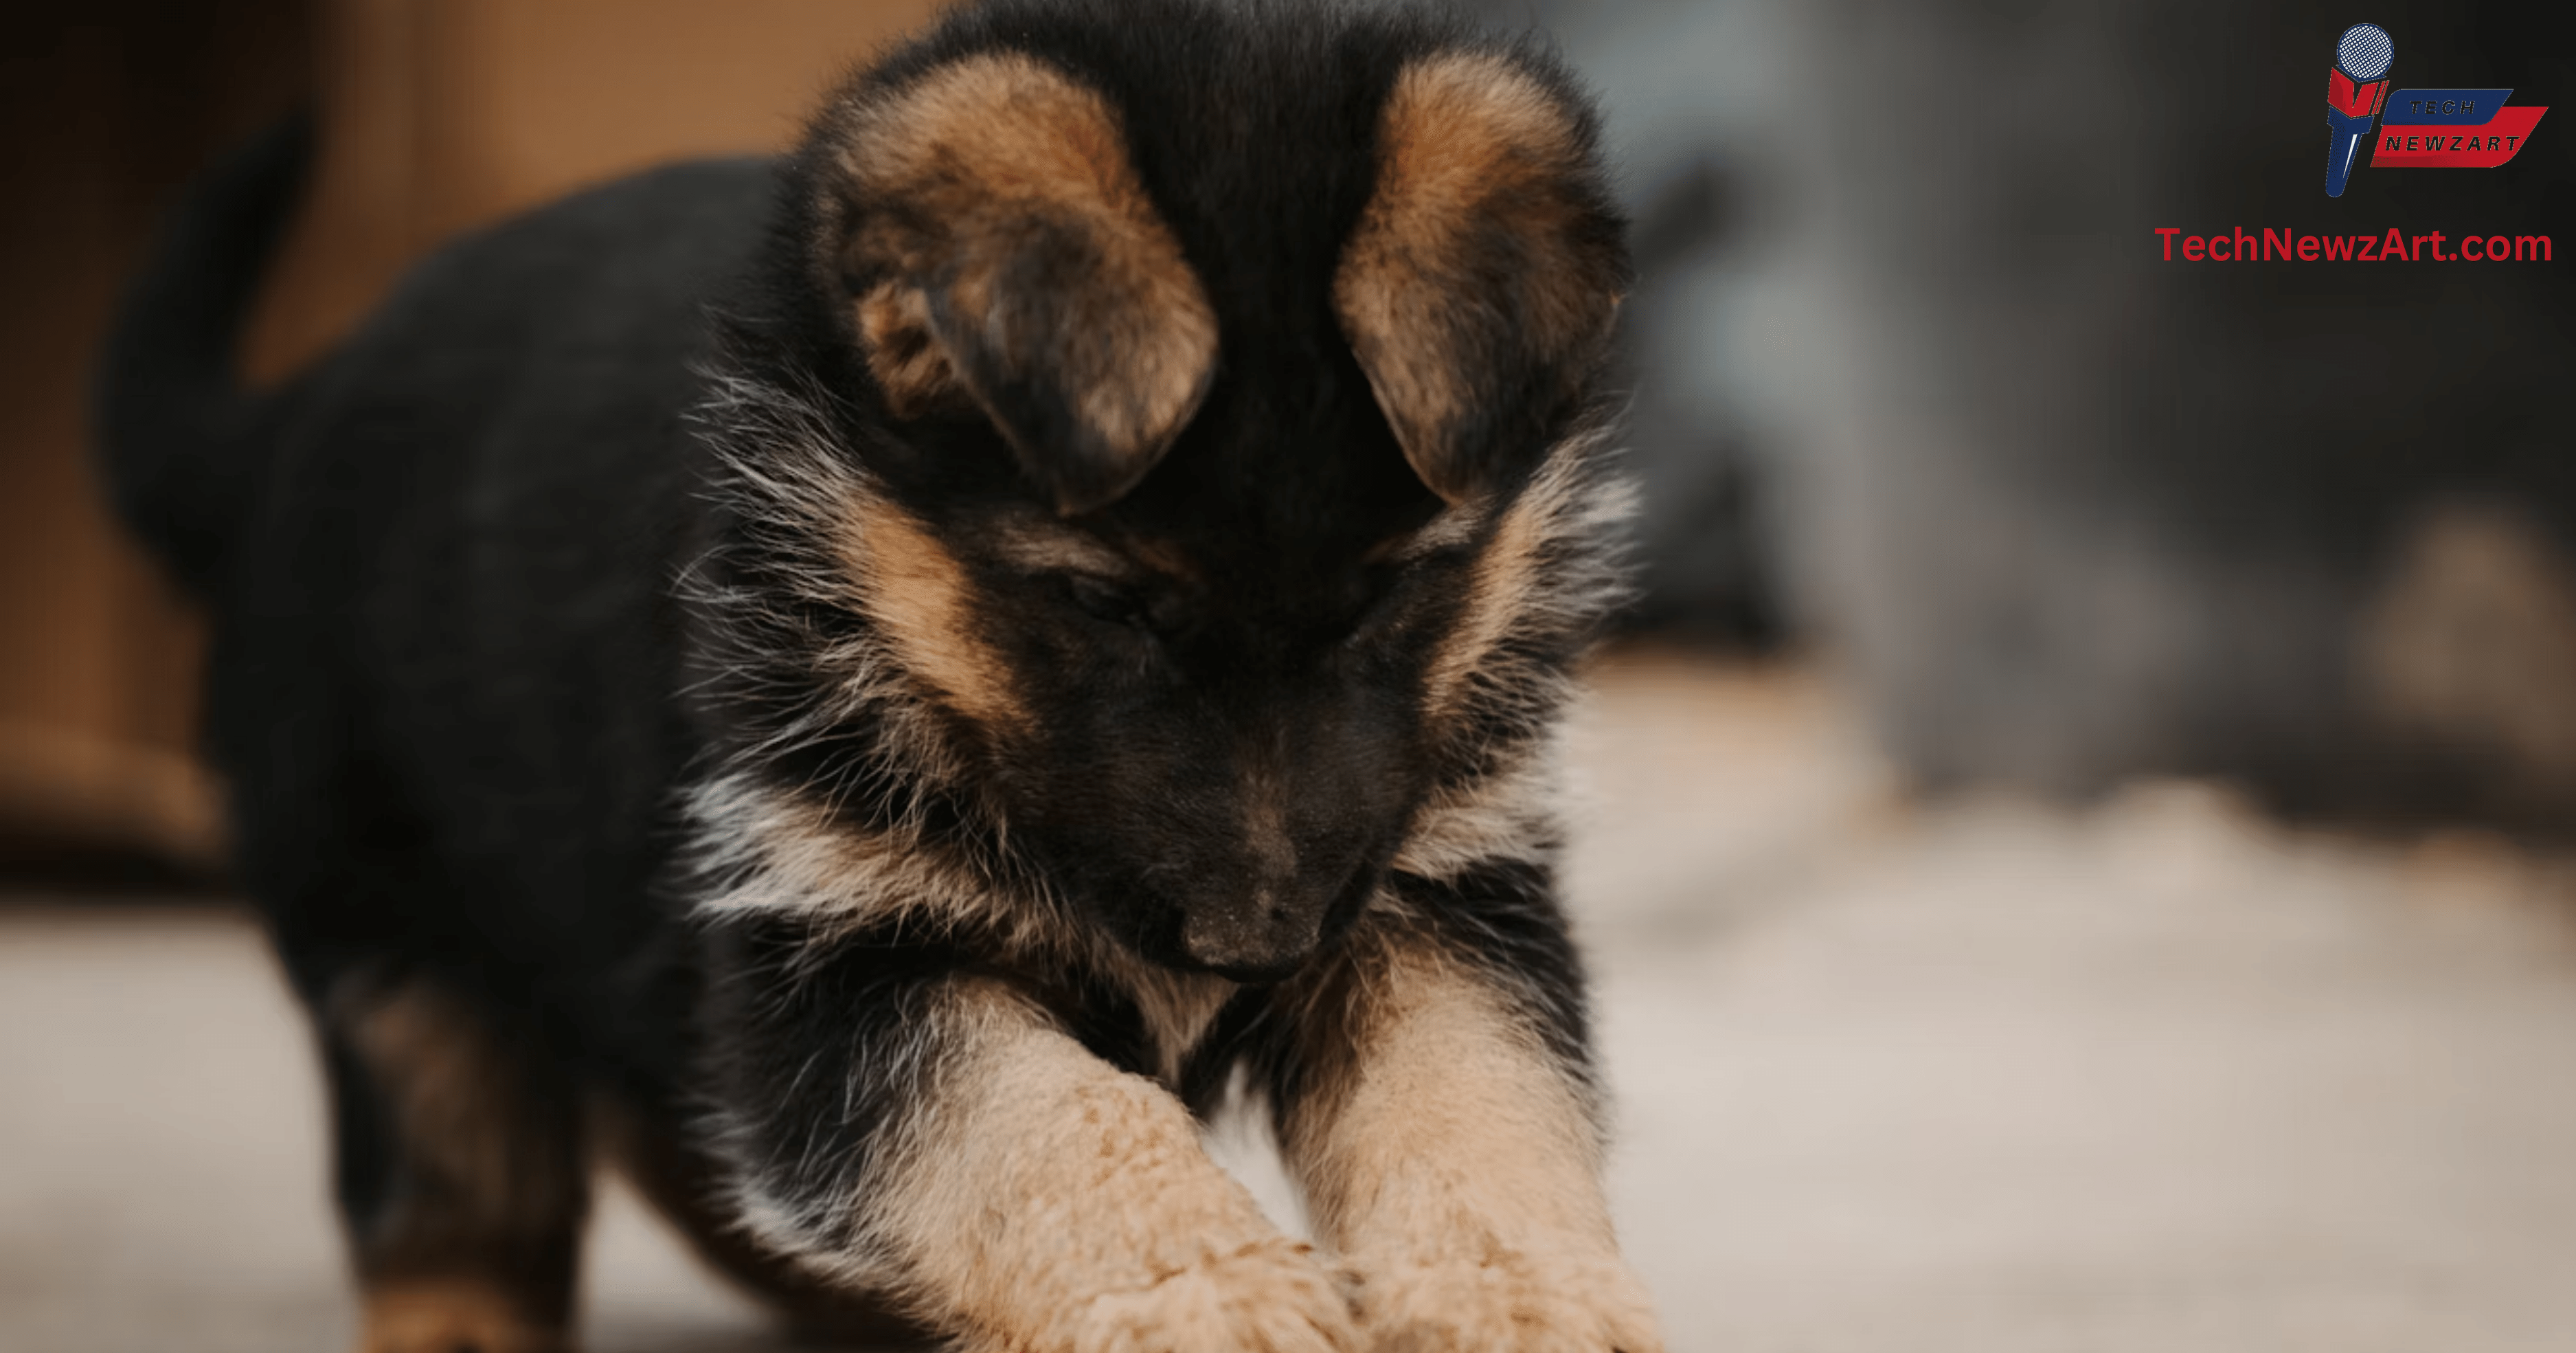 German Shepherd Puppies for Sale